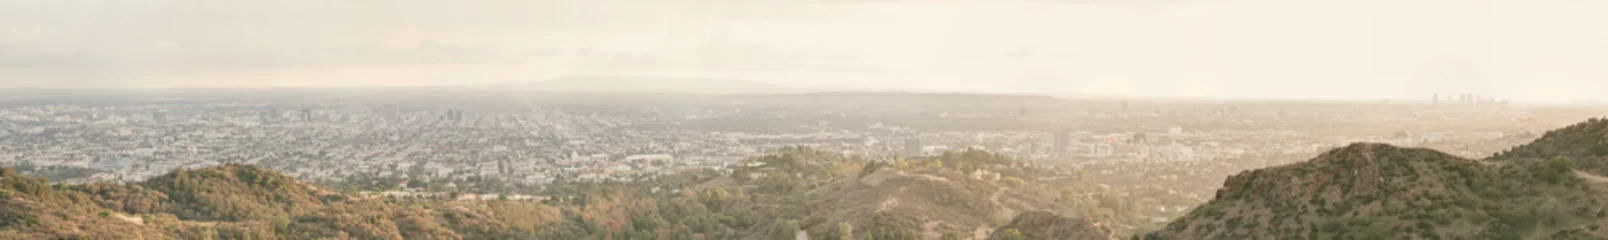 Selbstklebende Fototapete Los Angeles Panoramablick auf die Stadt Los Angeles